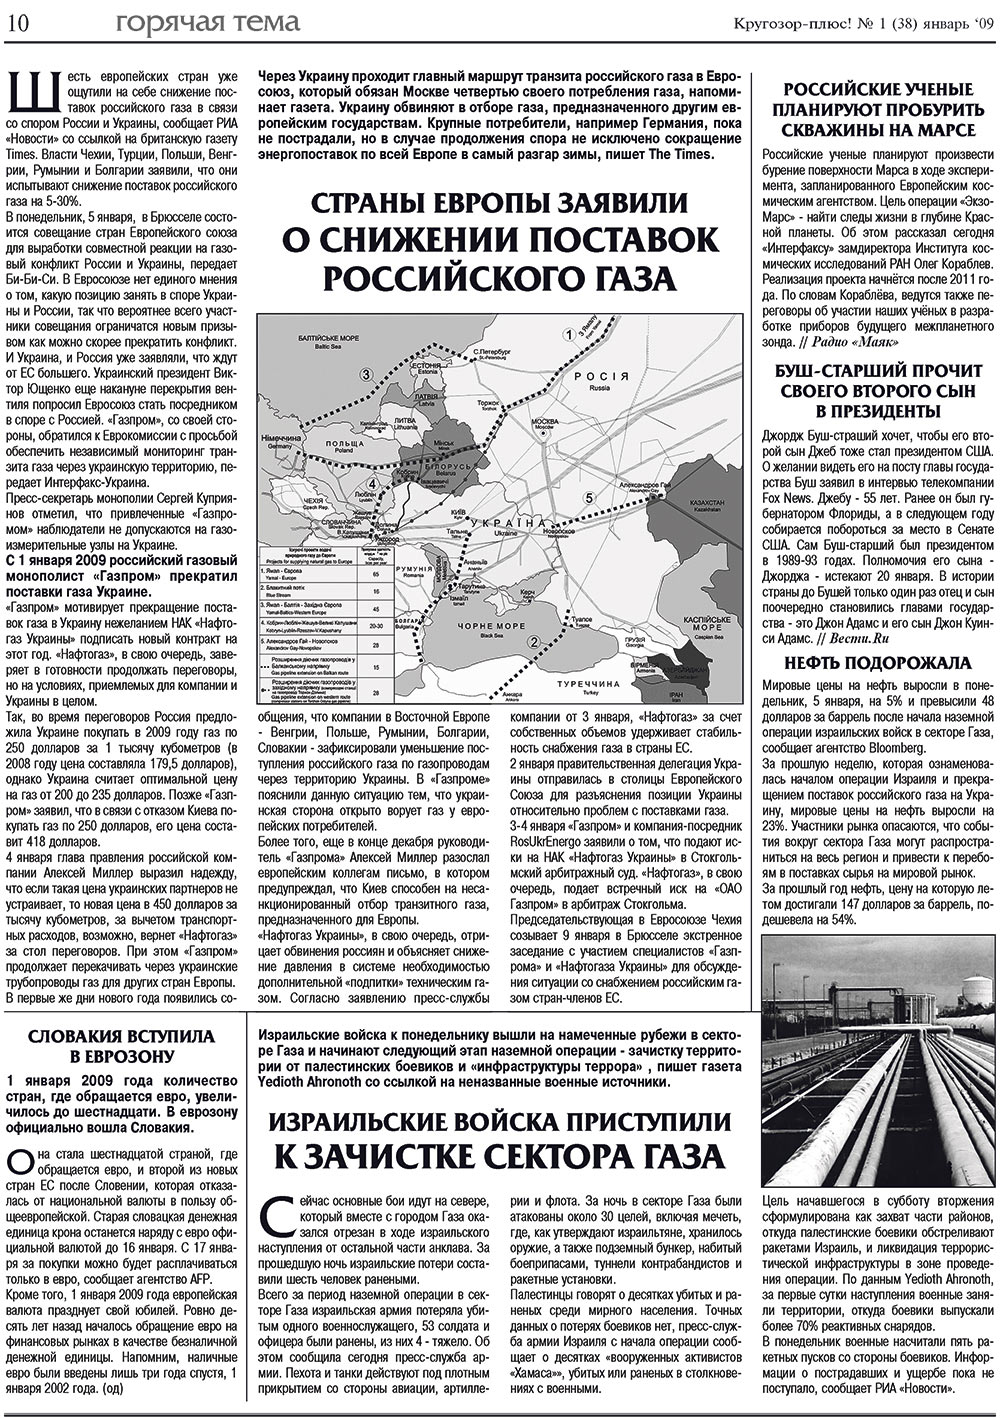 Кругозор плюс!, газета. 2009 №1 стр.10